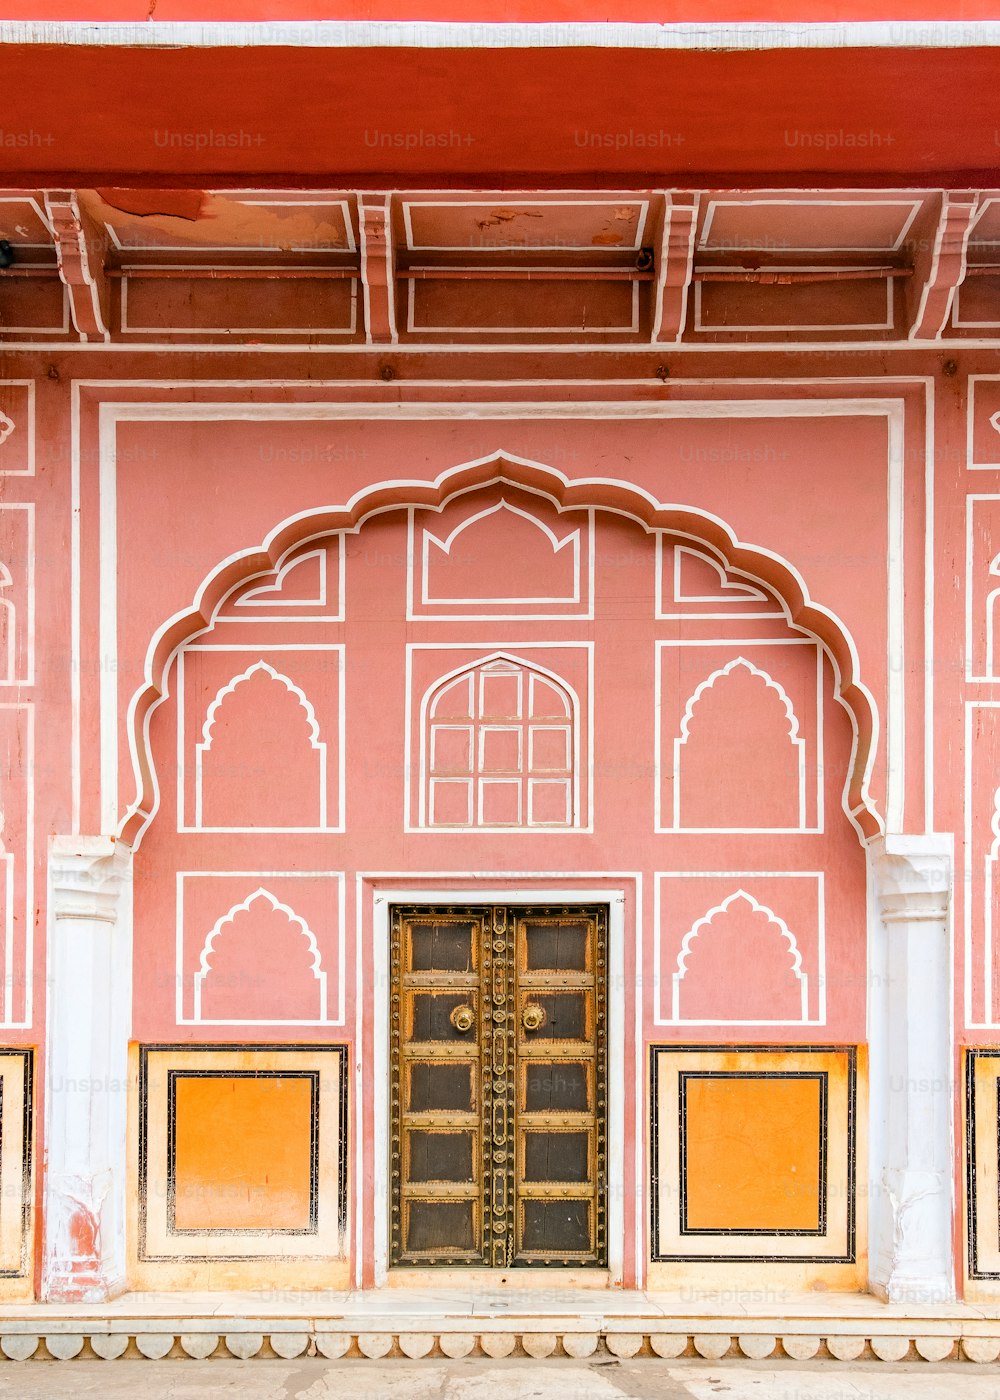 インド、ラジャスタン州ジャイプール市のジャイプール市宮殿。ユネスコの世界遺産は、美しいピンク色の建築要素として知られています。インドで有名な目的地。